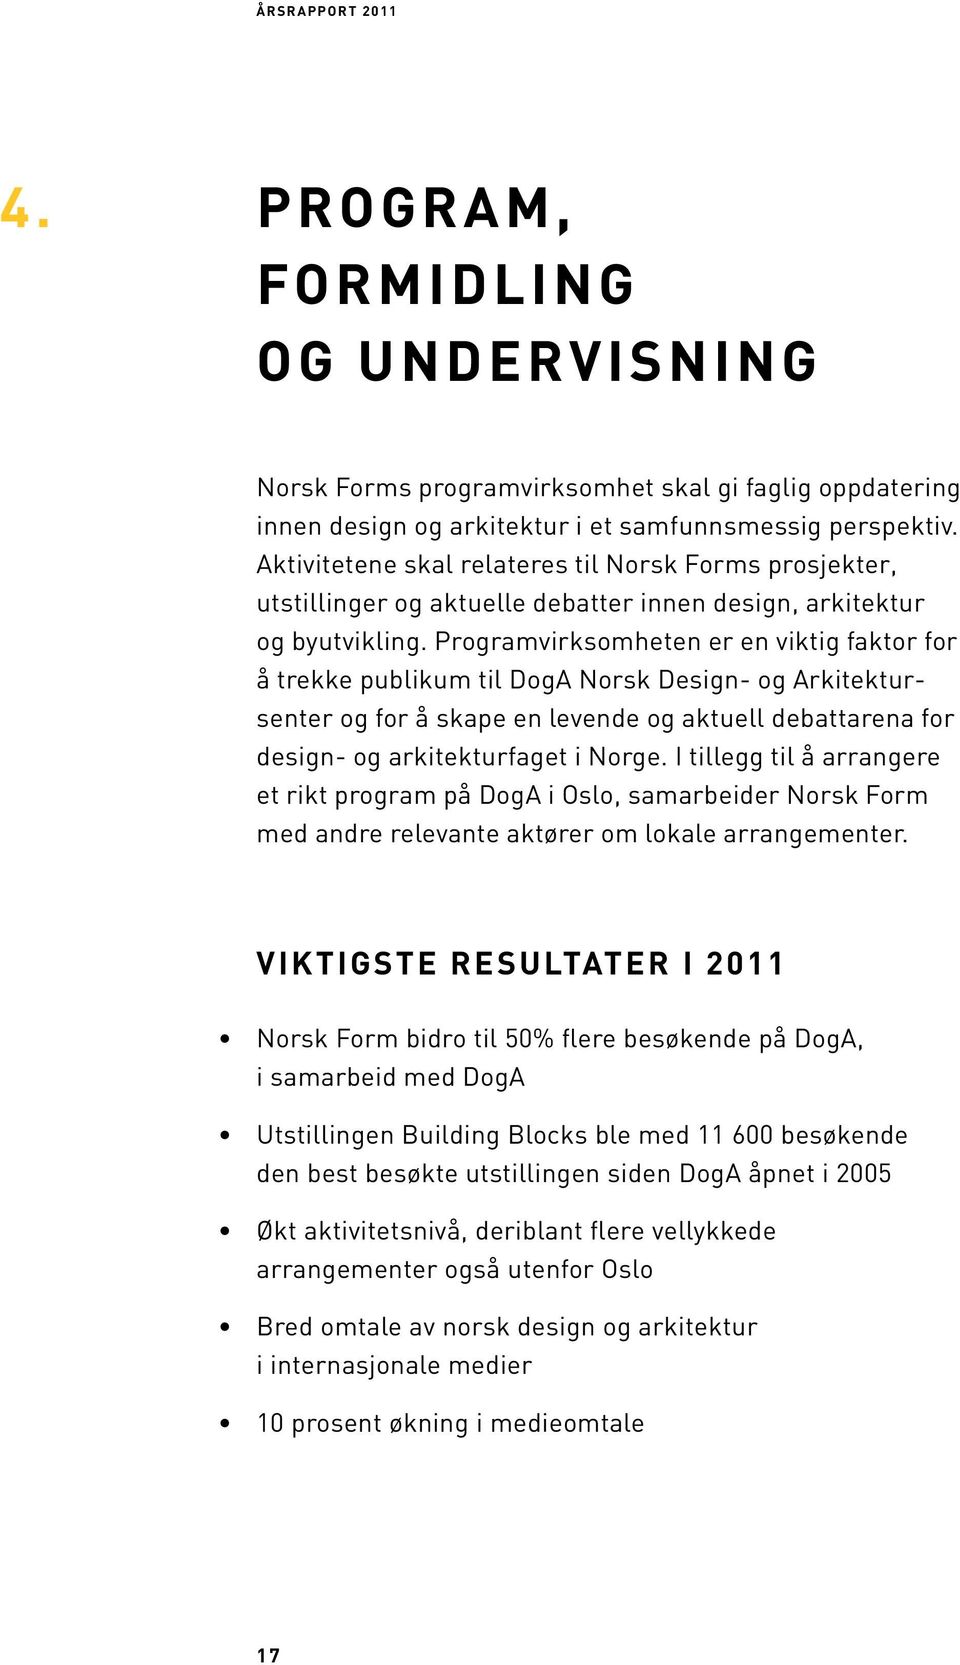 Programvirksomheten er en viktig faktor for å trekke publikum til DogA Norsk Design- og Arkitektursenter og for å skape en levende og aktuell debattarena for design- og arkitekturfaget i Norge.